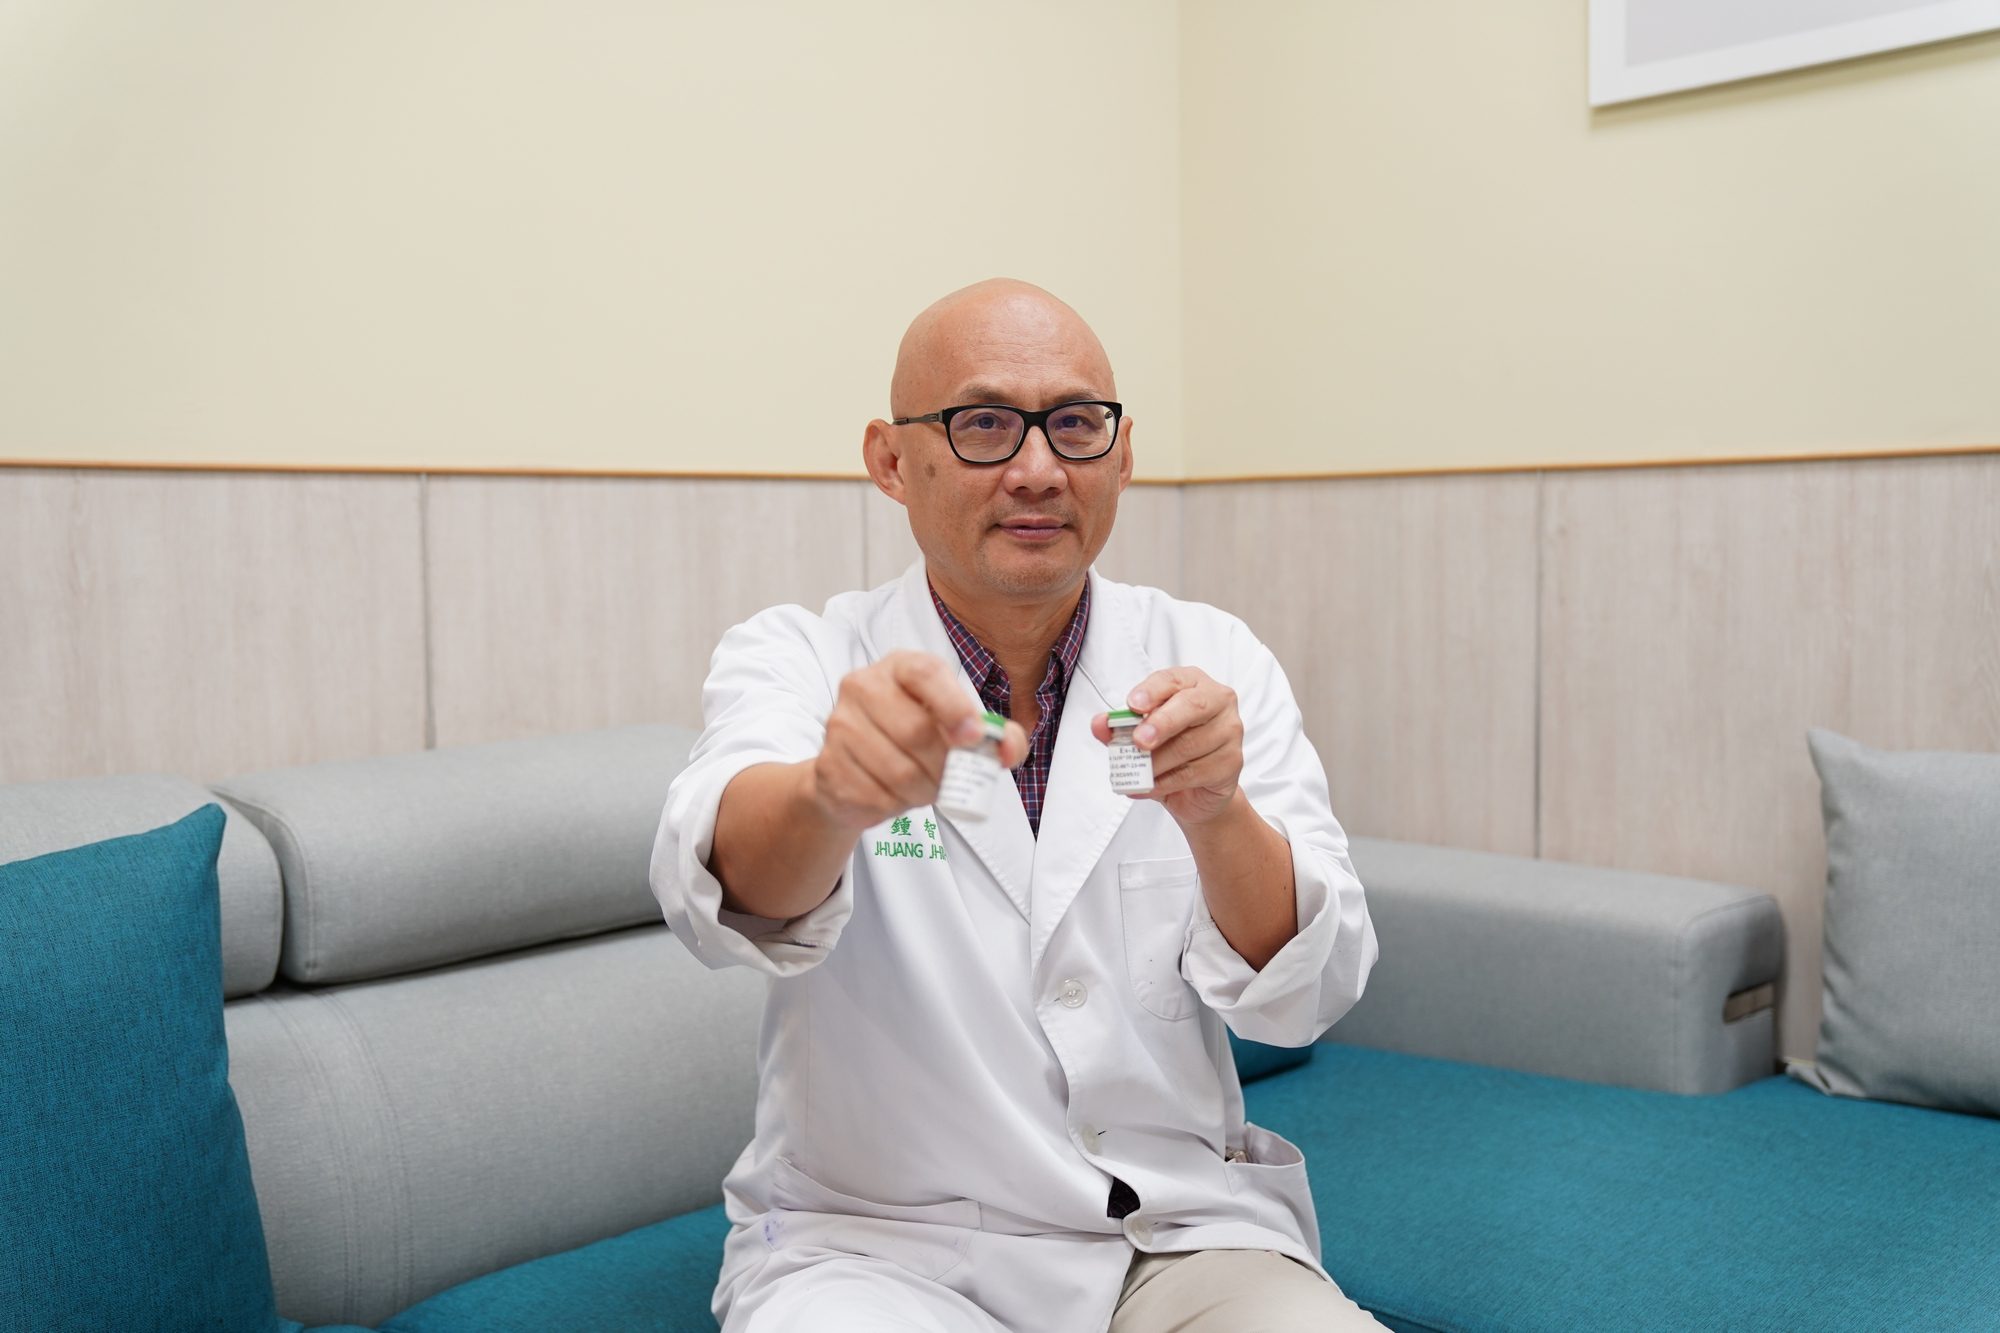 35歲男子自稱鬼門關走一回 外泌體助緩解症狀 - 早安台灣新聞 | Morning Taiwan News